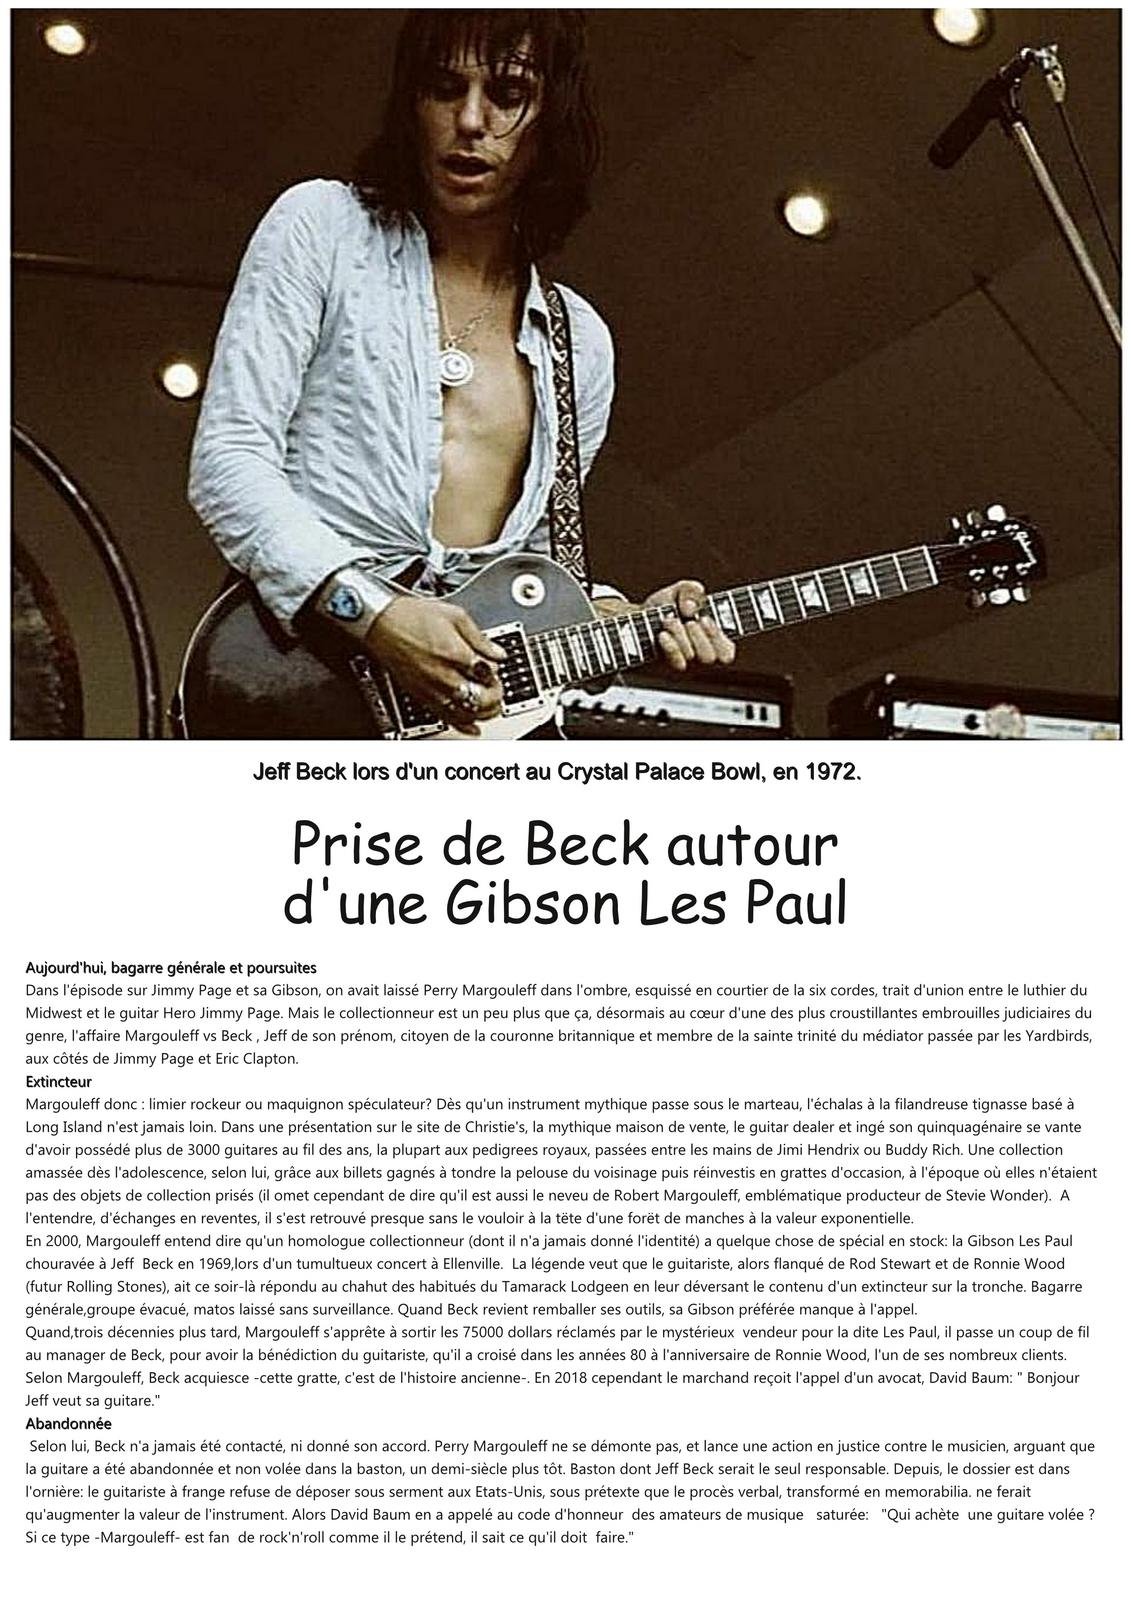 Prise de Beck autour d'une Gibson.jpg